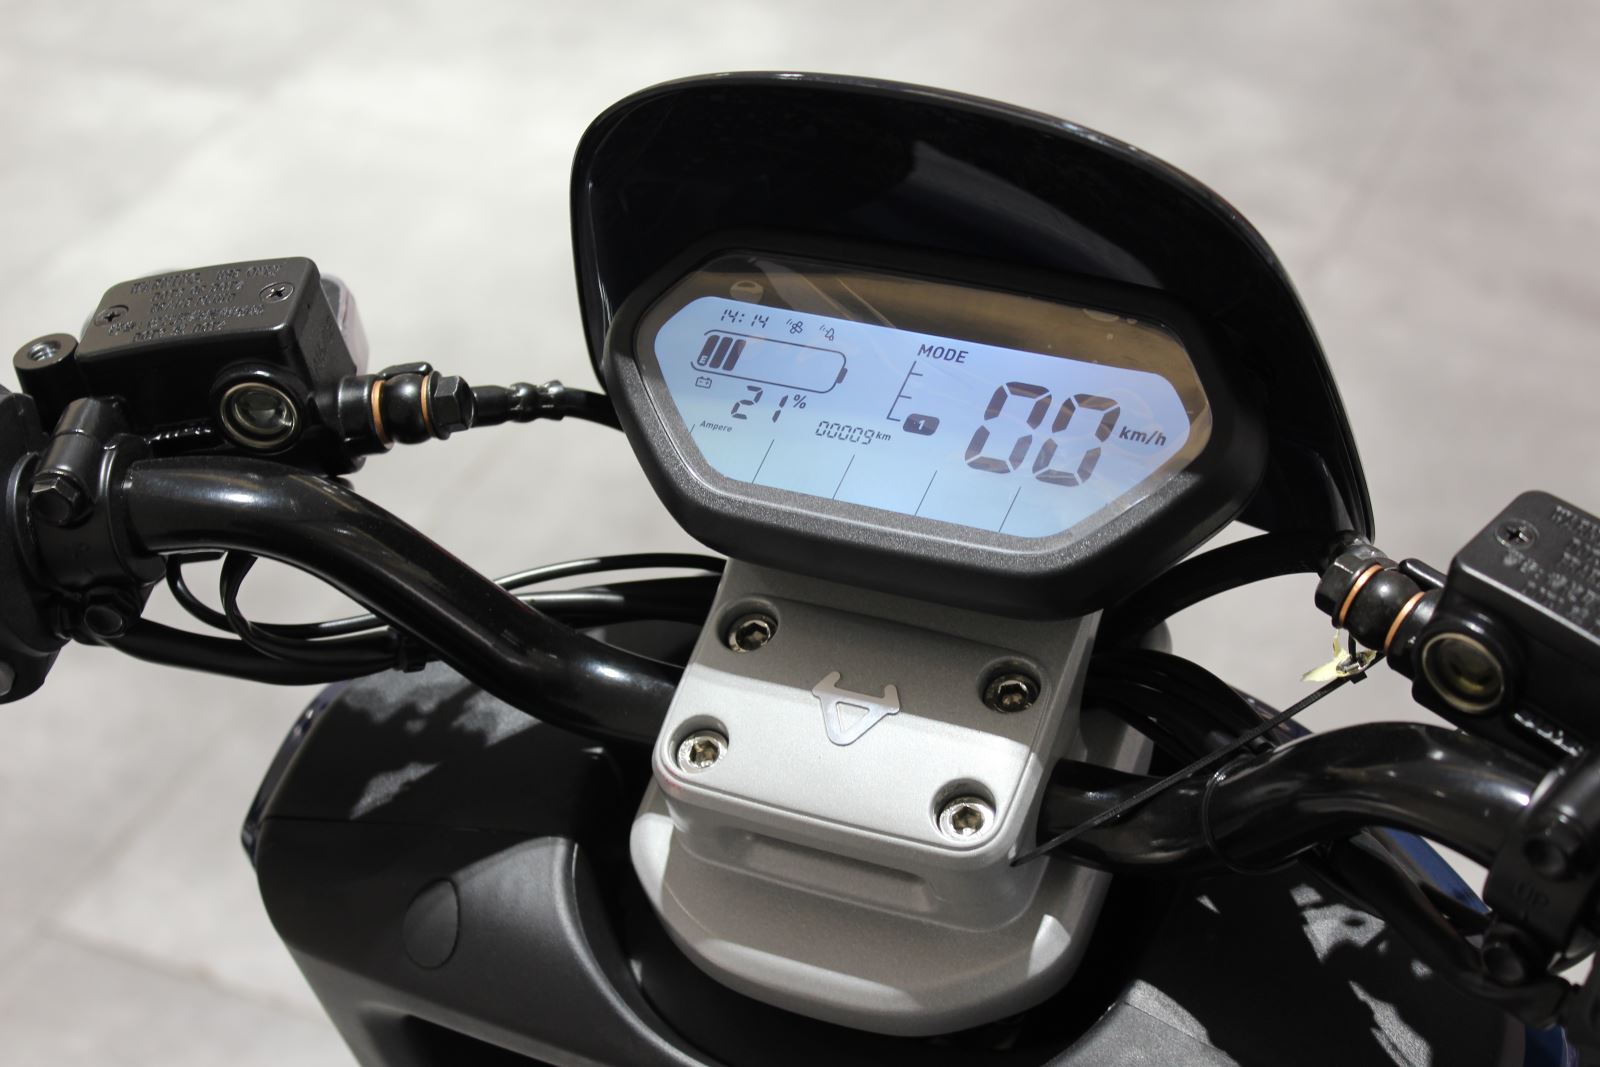 صفحه نمایش دیجیتال موتورسیکلت برقی